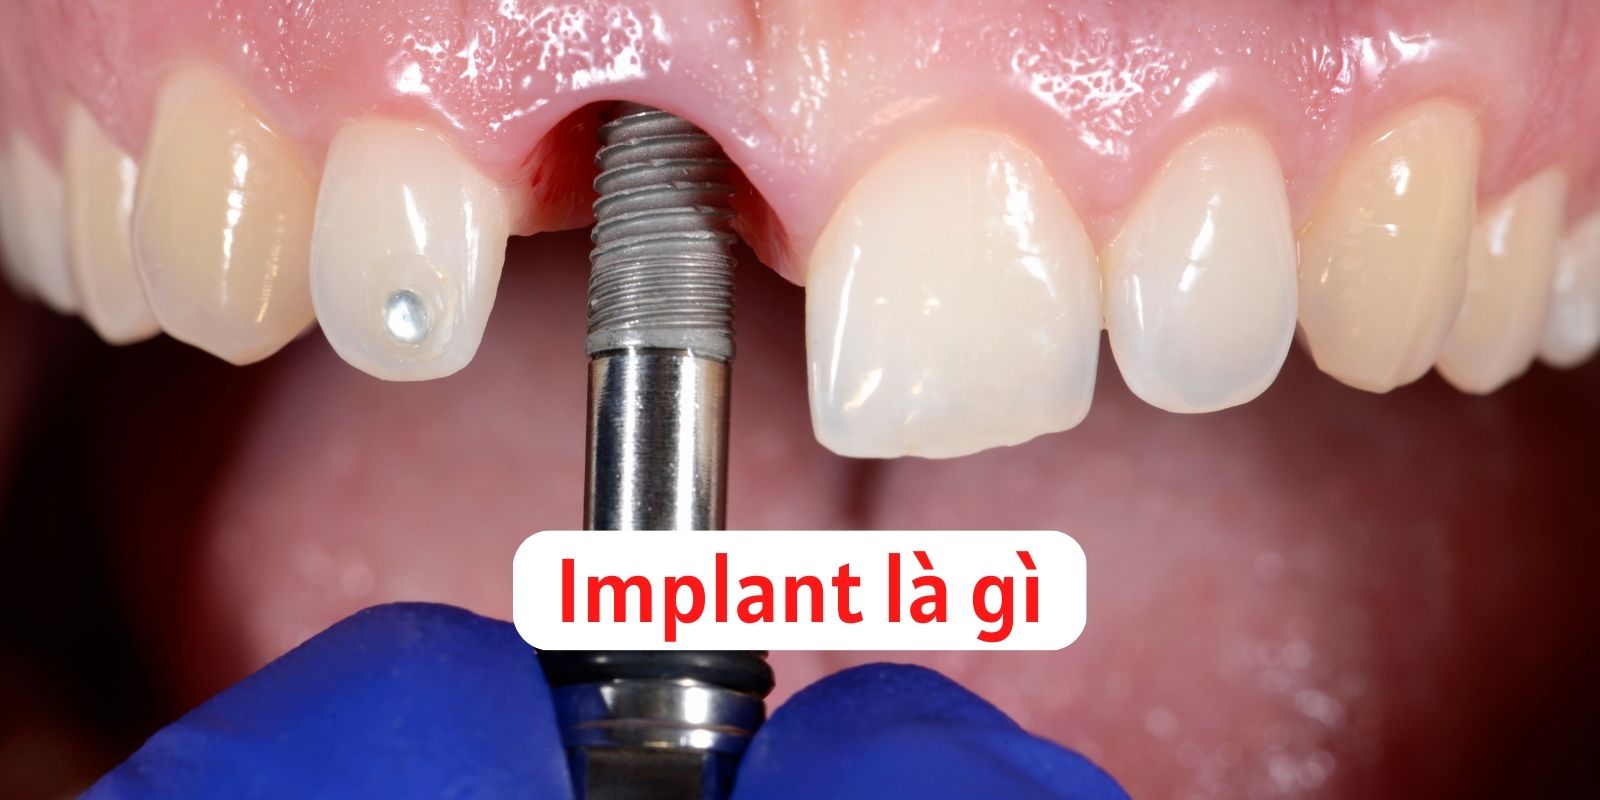 Implant là gì? Trồng răng Implant và các cụm từ liên quan